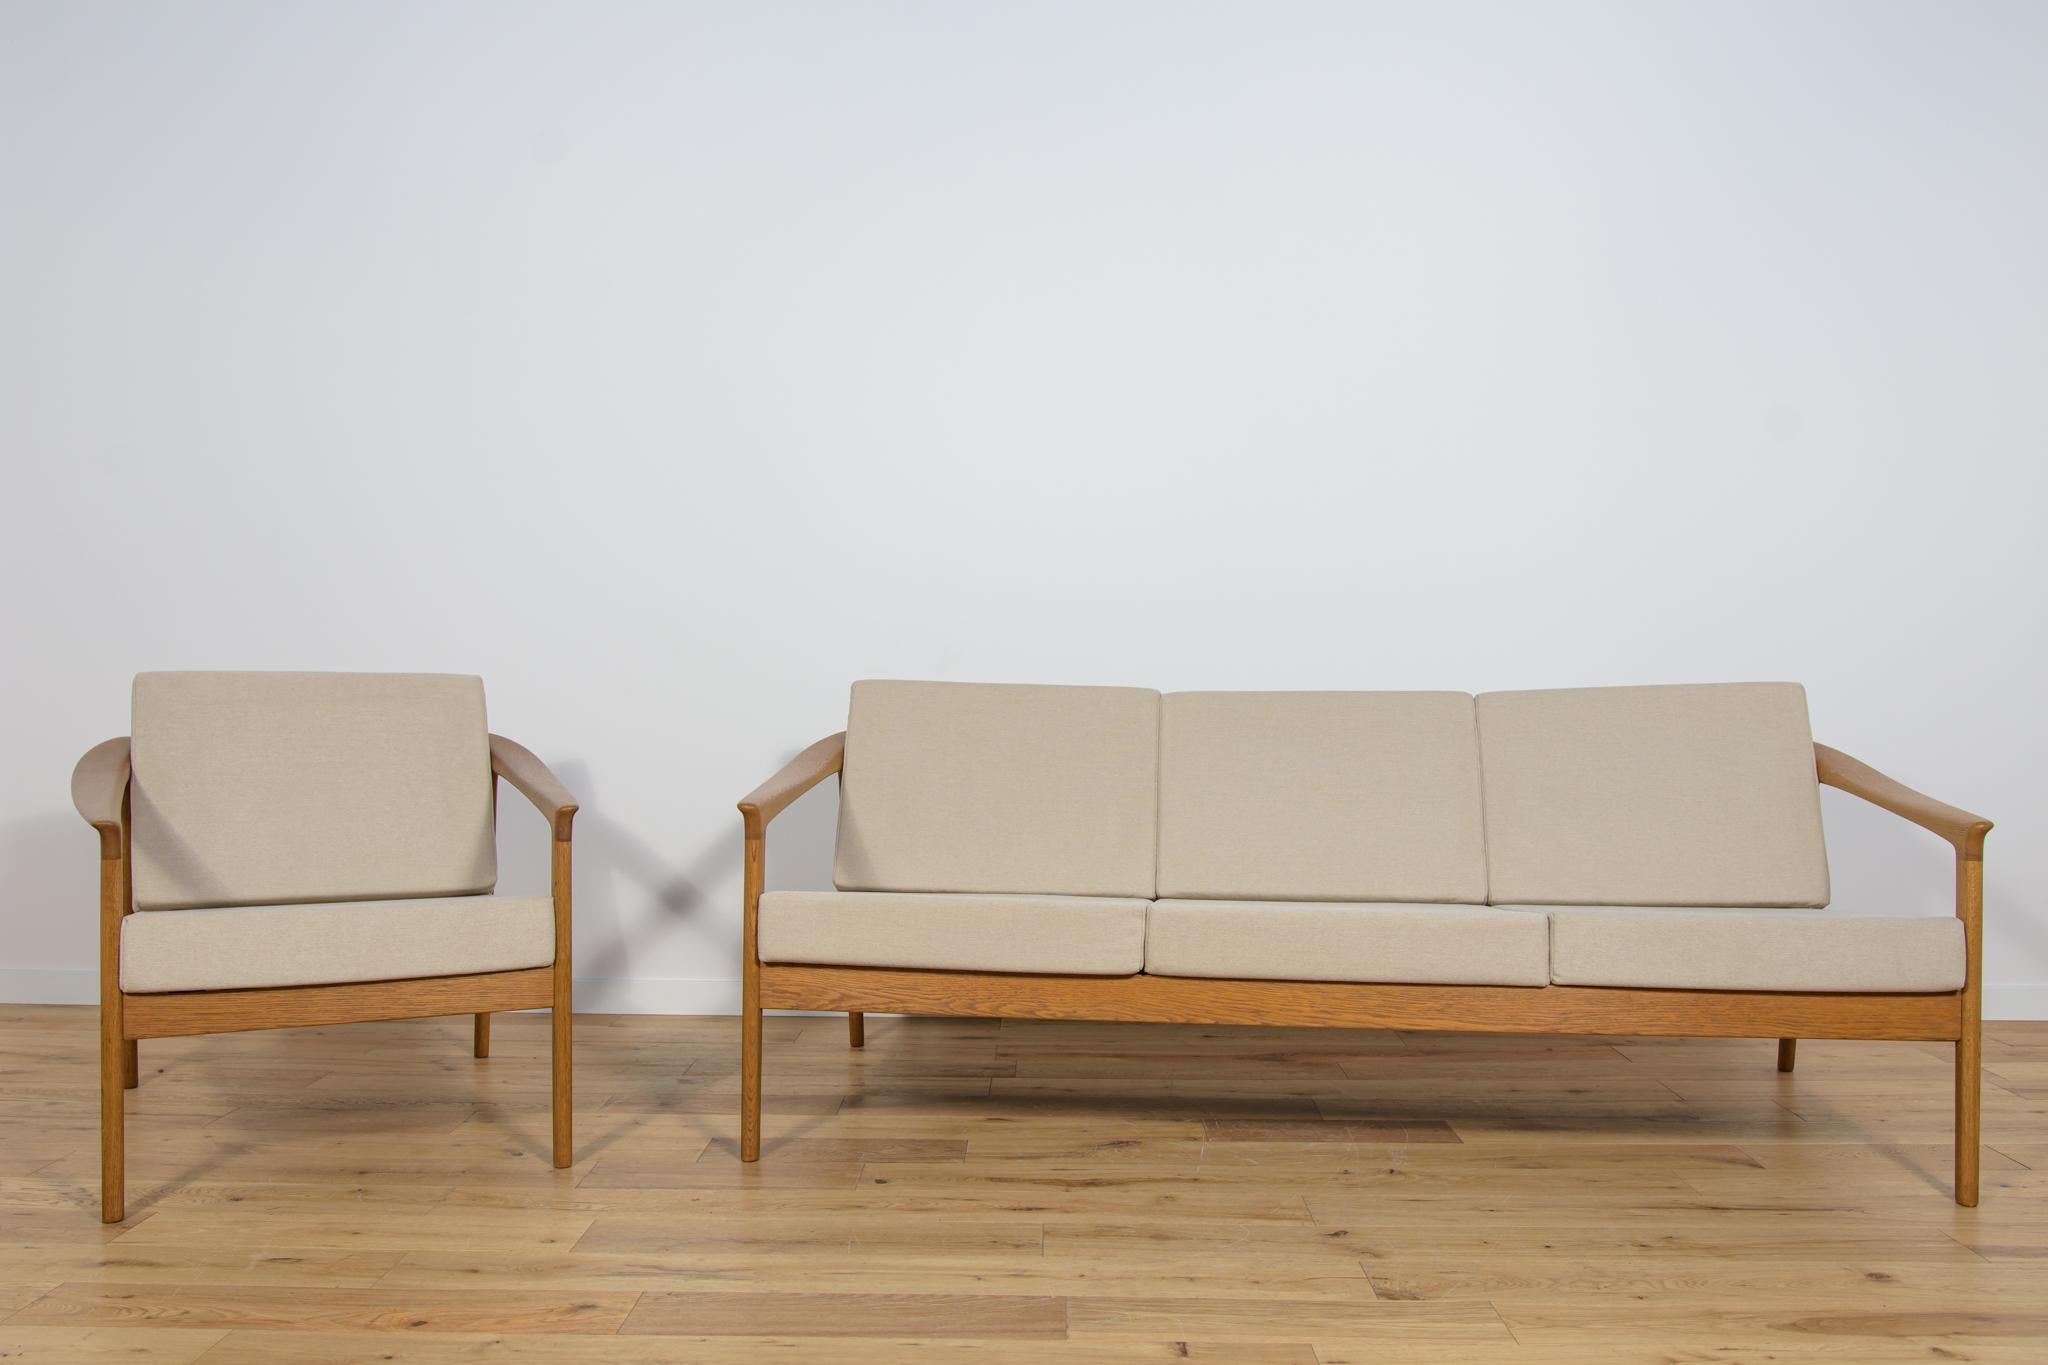 Monterey /5-161 Canapé et fauteuil conçus par Folke/One, produits par le fabricant suédois Bodafors en 1961. Sofa and Armchair a des accoudoirs profilés, représentant un haut niveau d'artisanat, caractéristique du design scandinave. La structure du